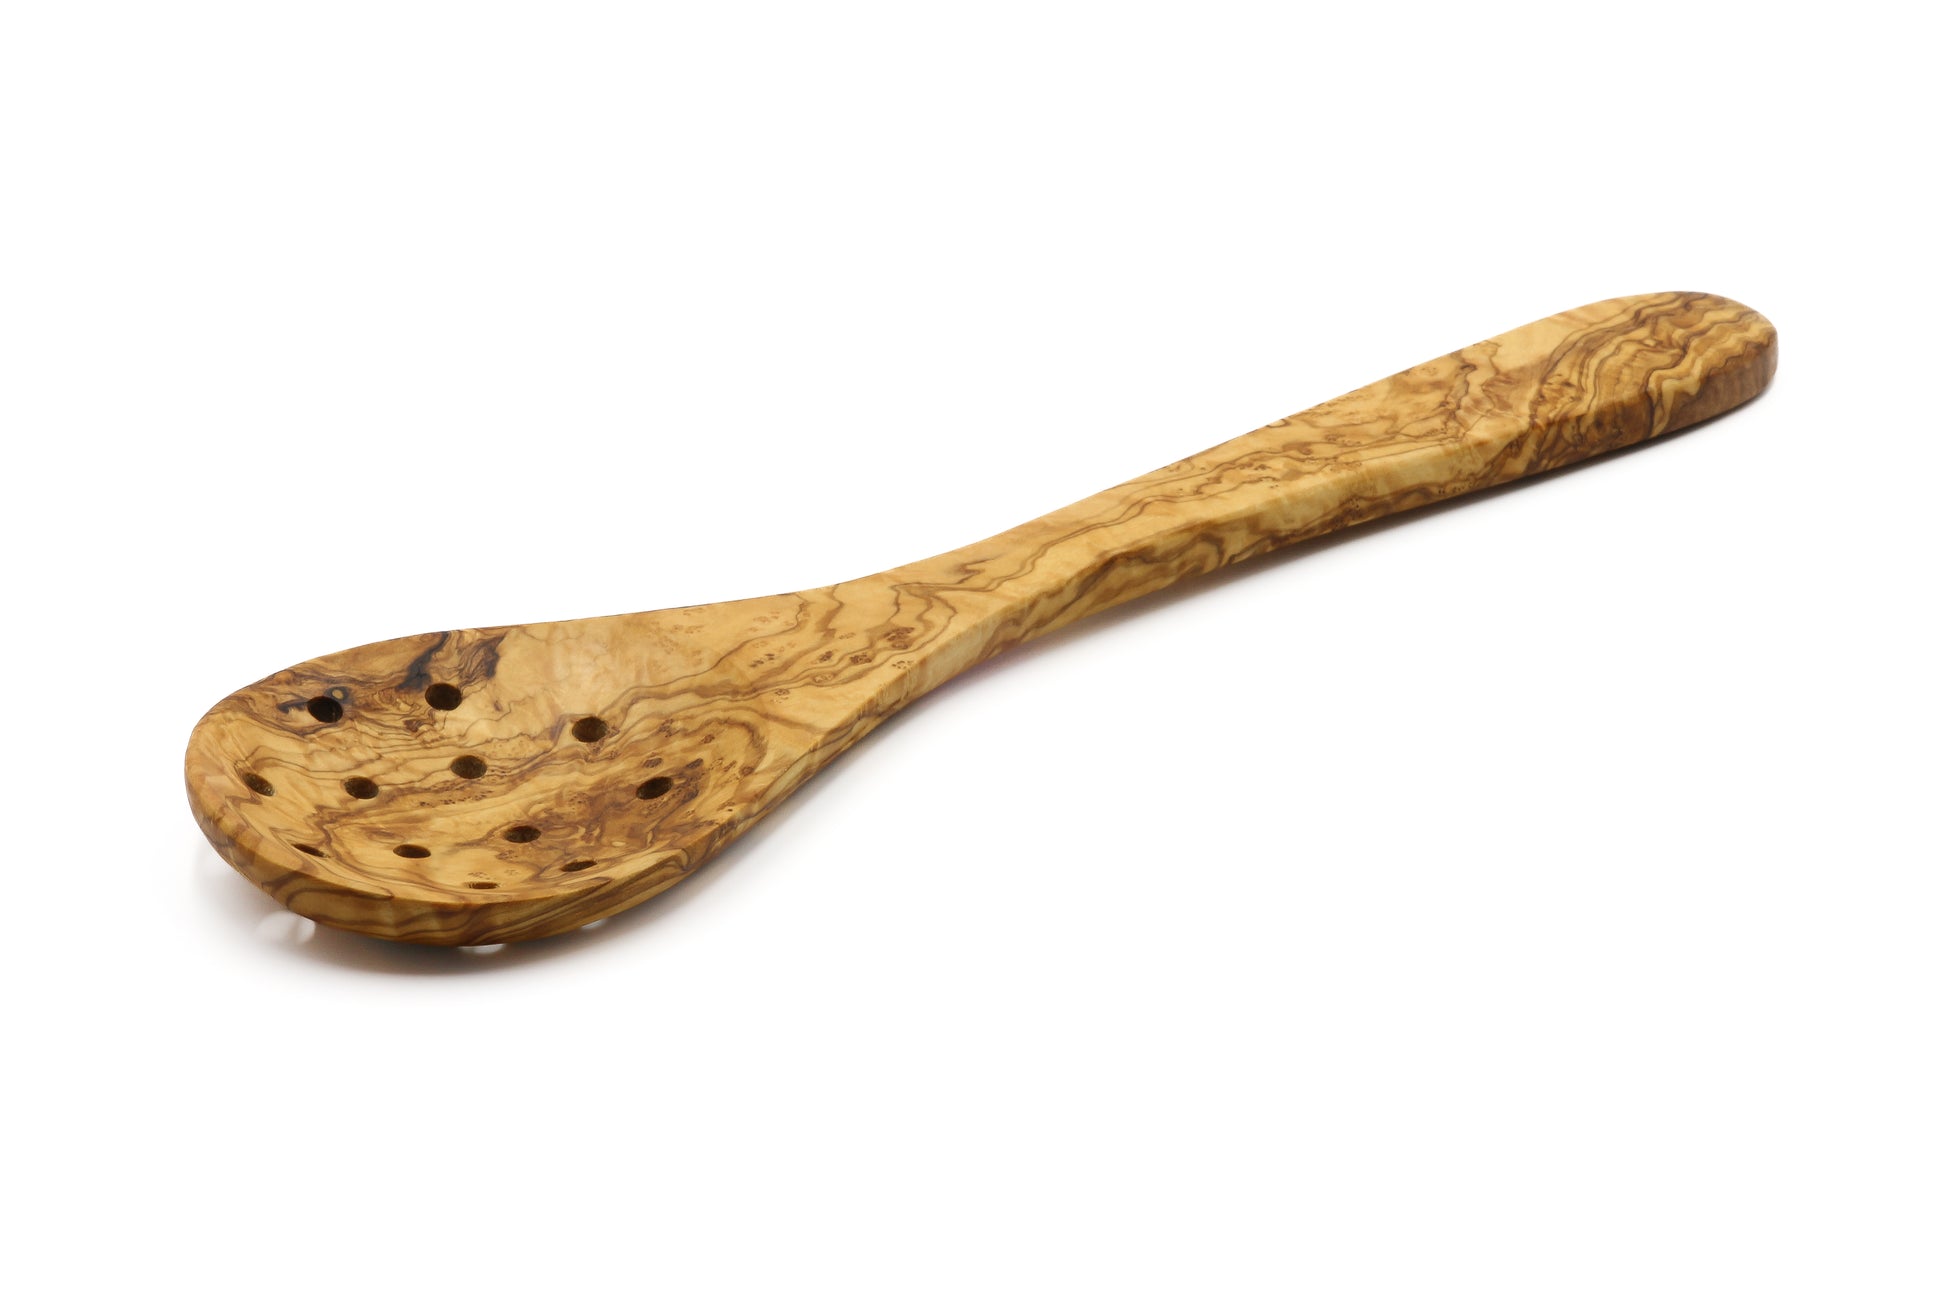 Olive wood colander, skimmer, and serving spoon